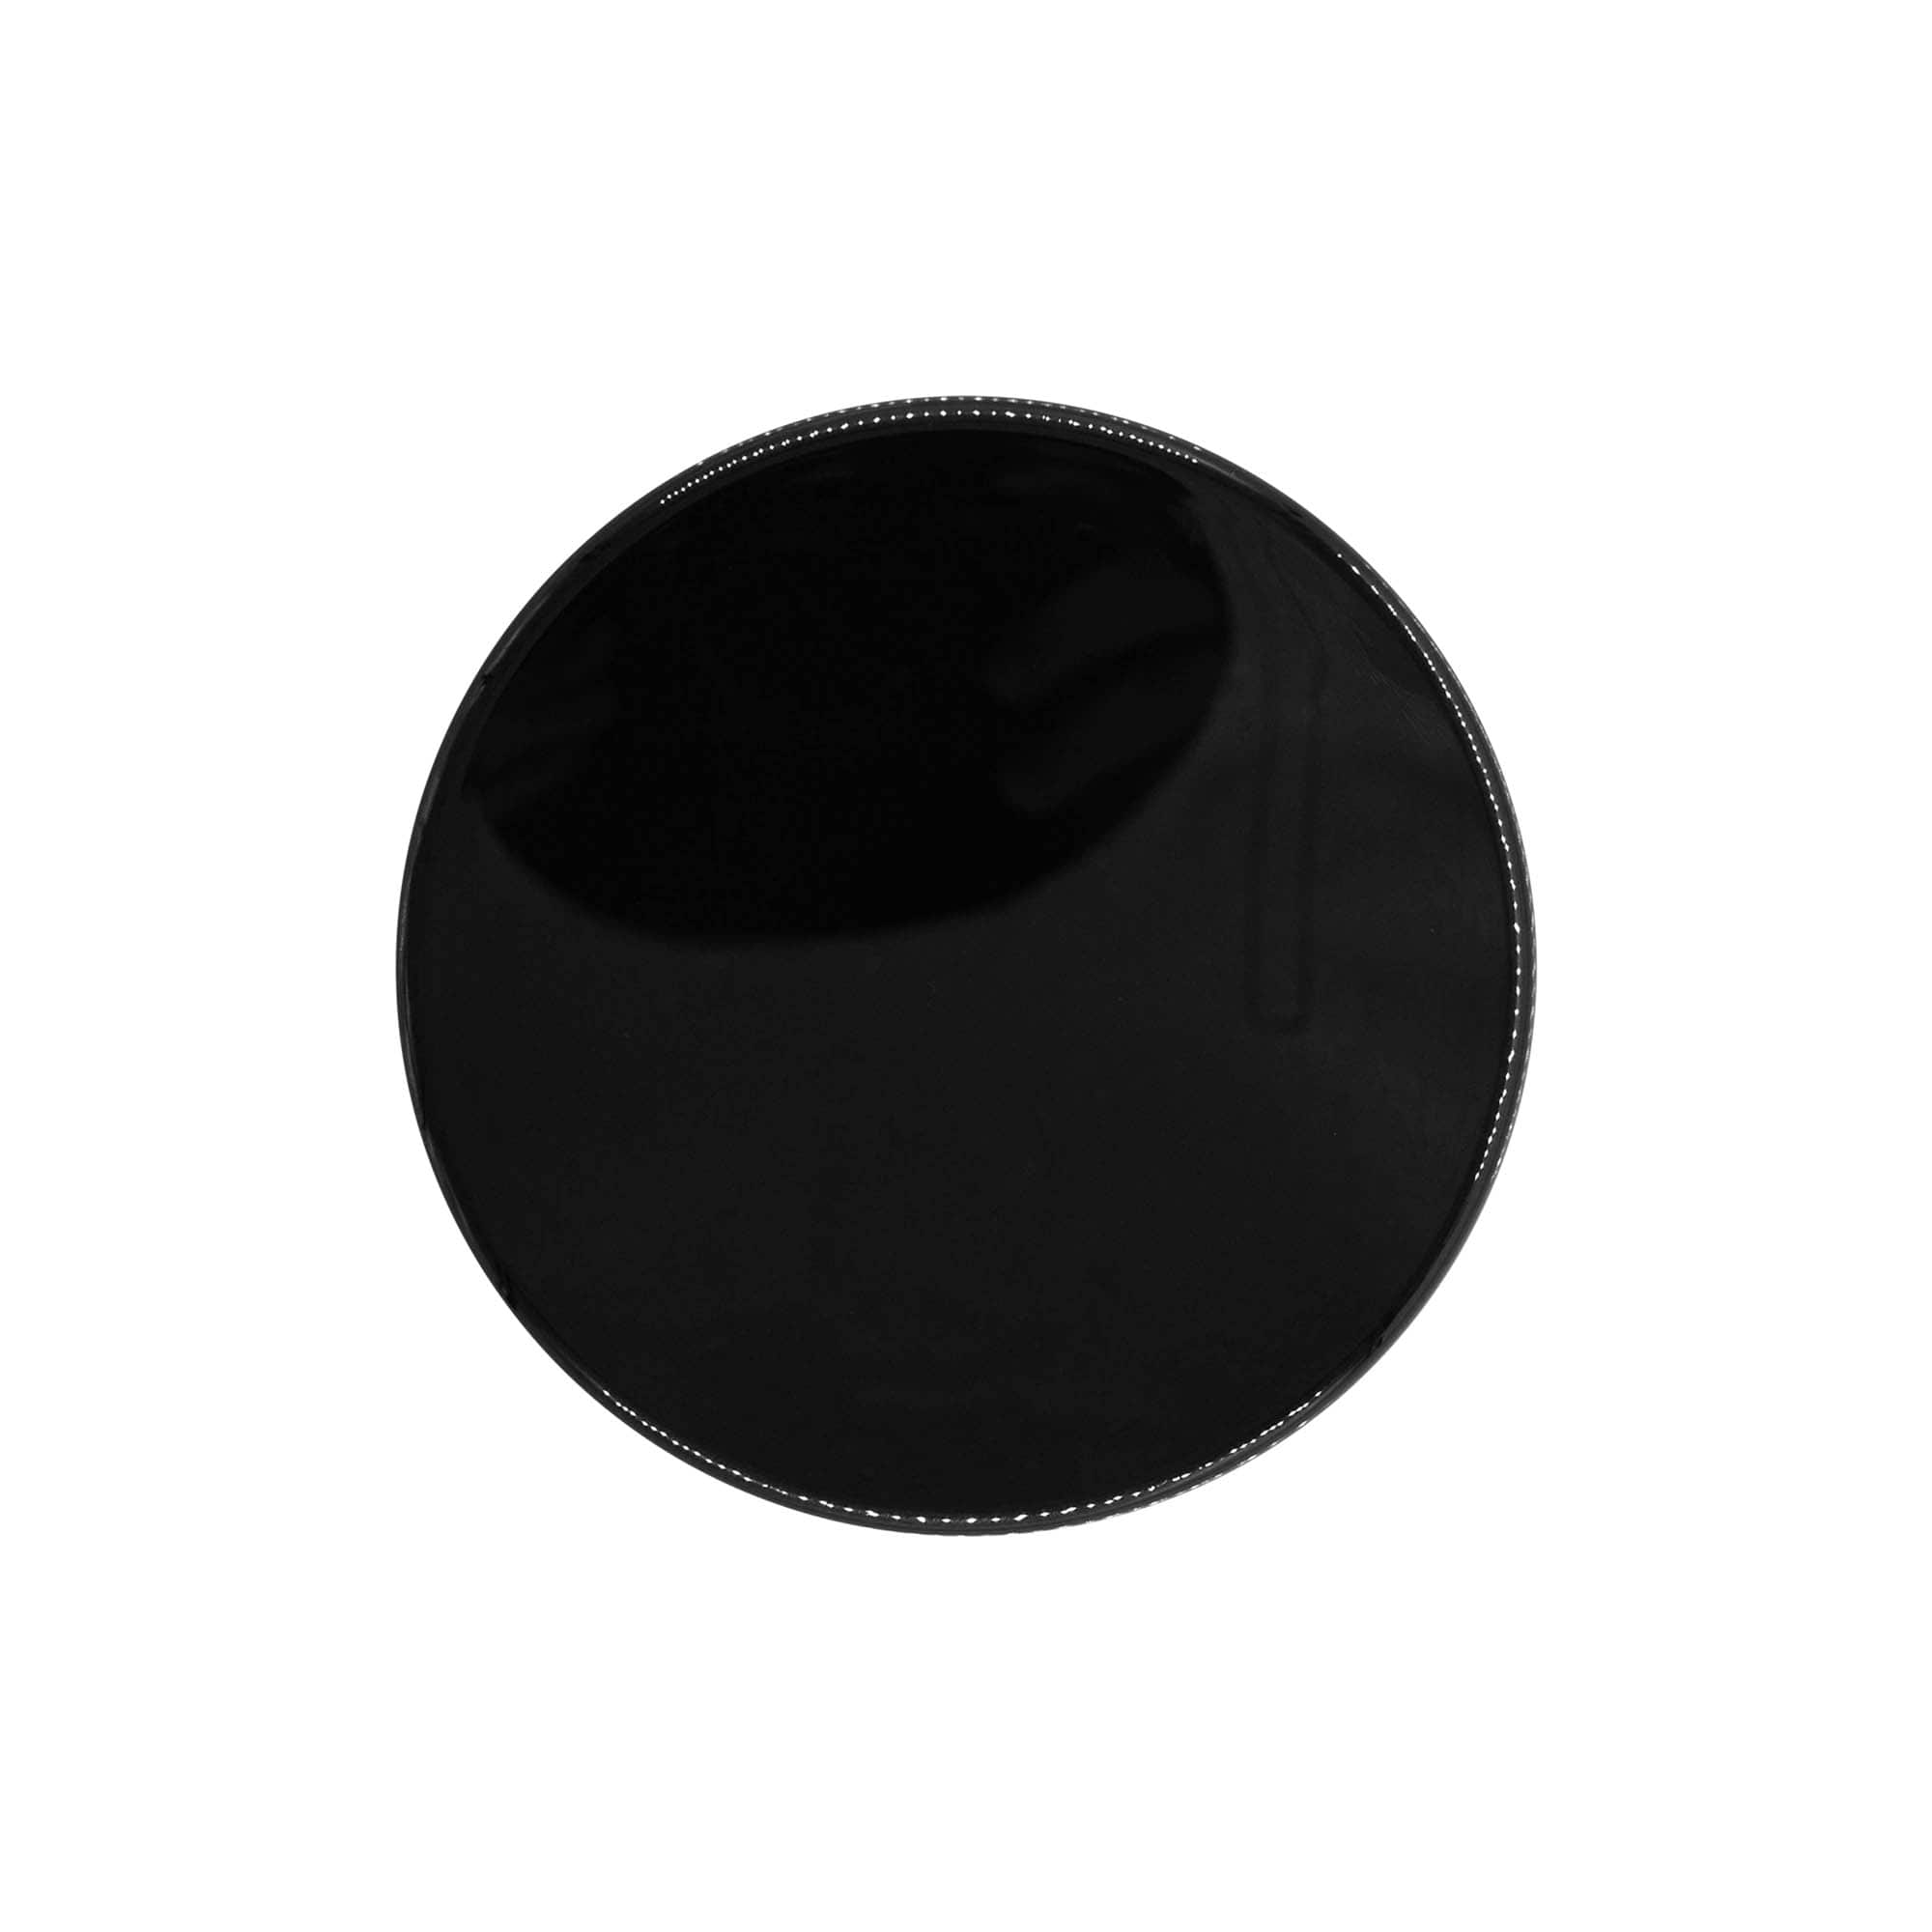 Schraubverschluss, PP-Kunststoff, schwarz, für Mündung: GPI 100/400